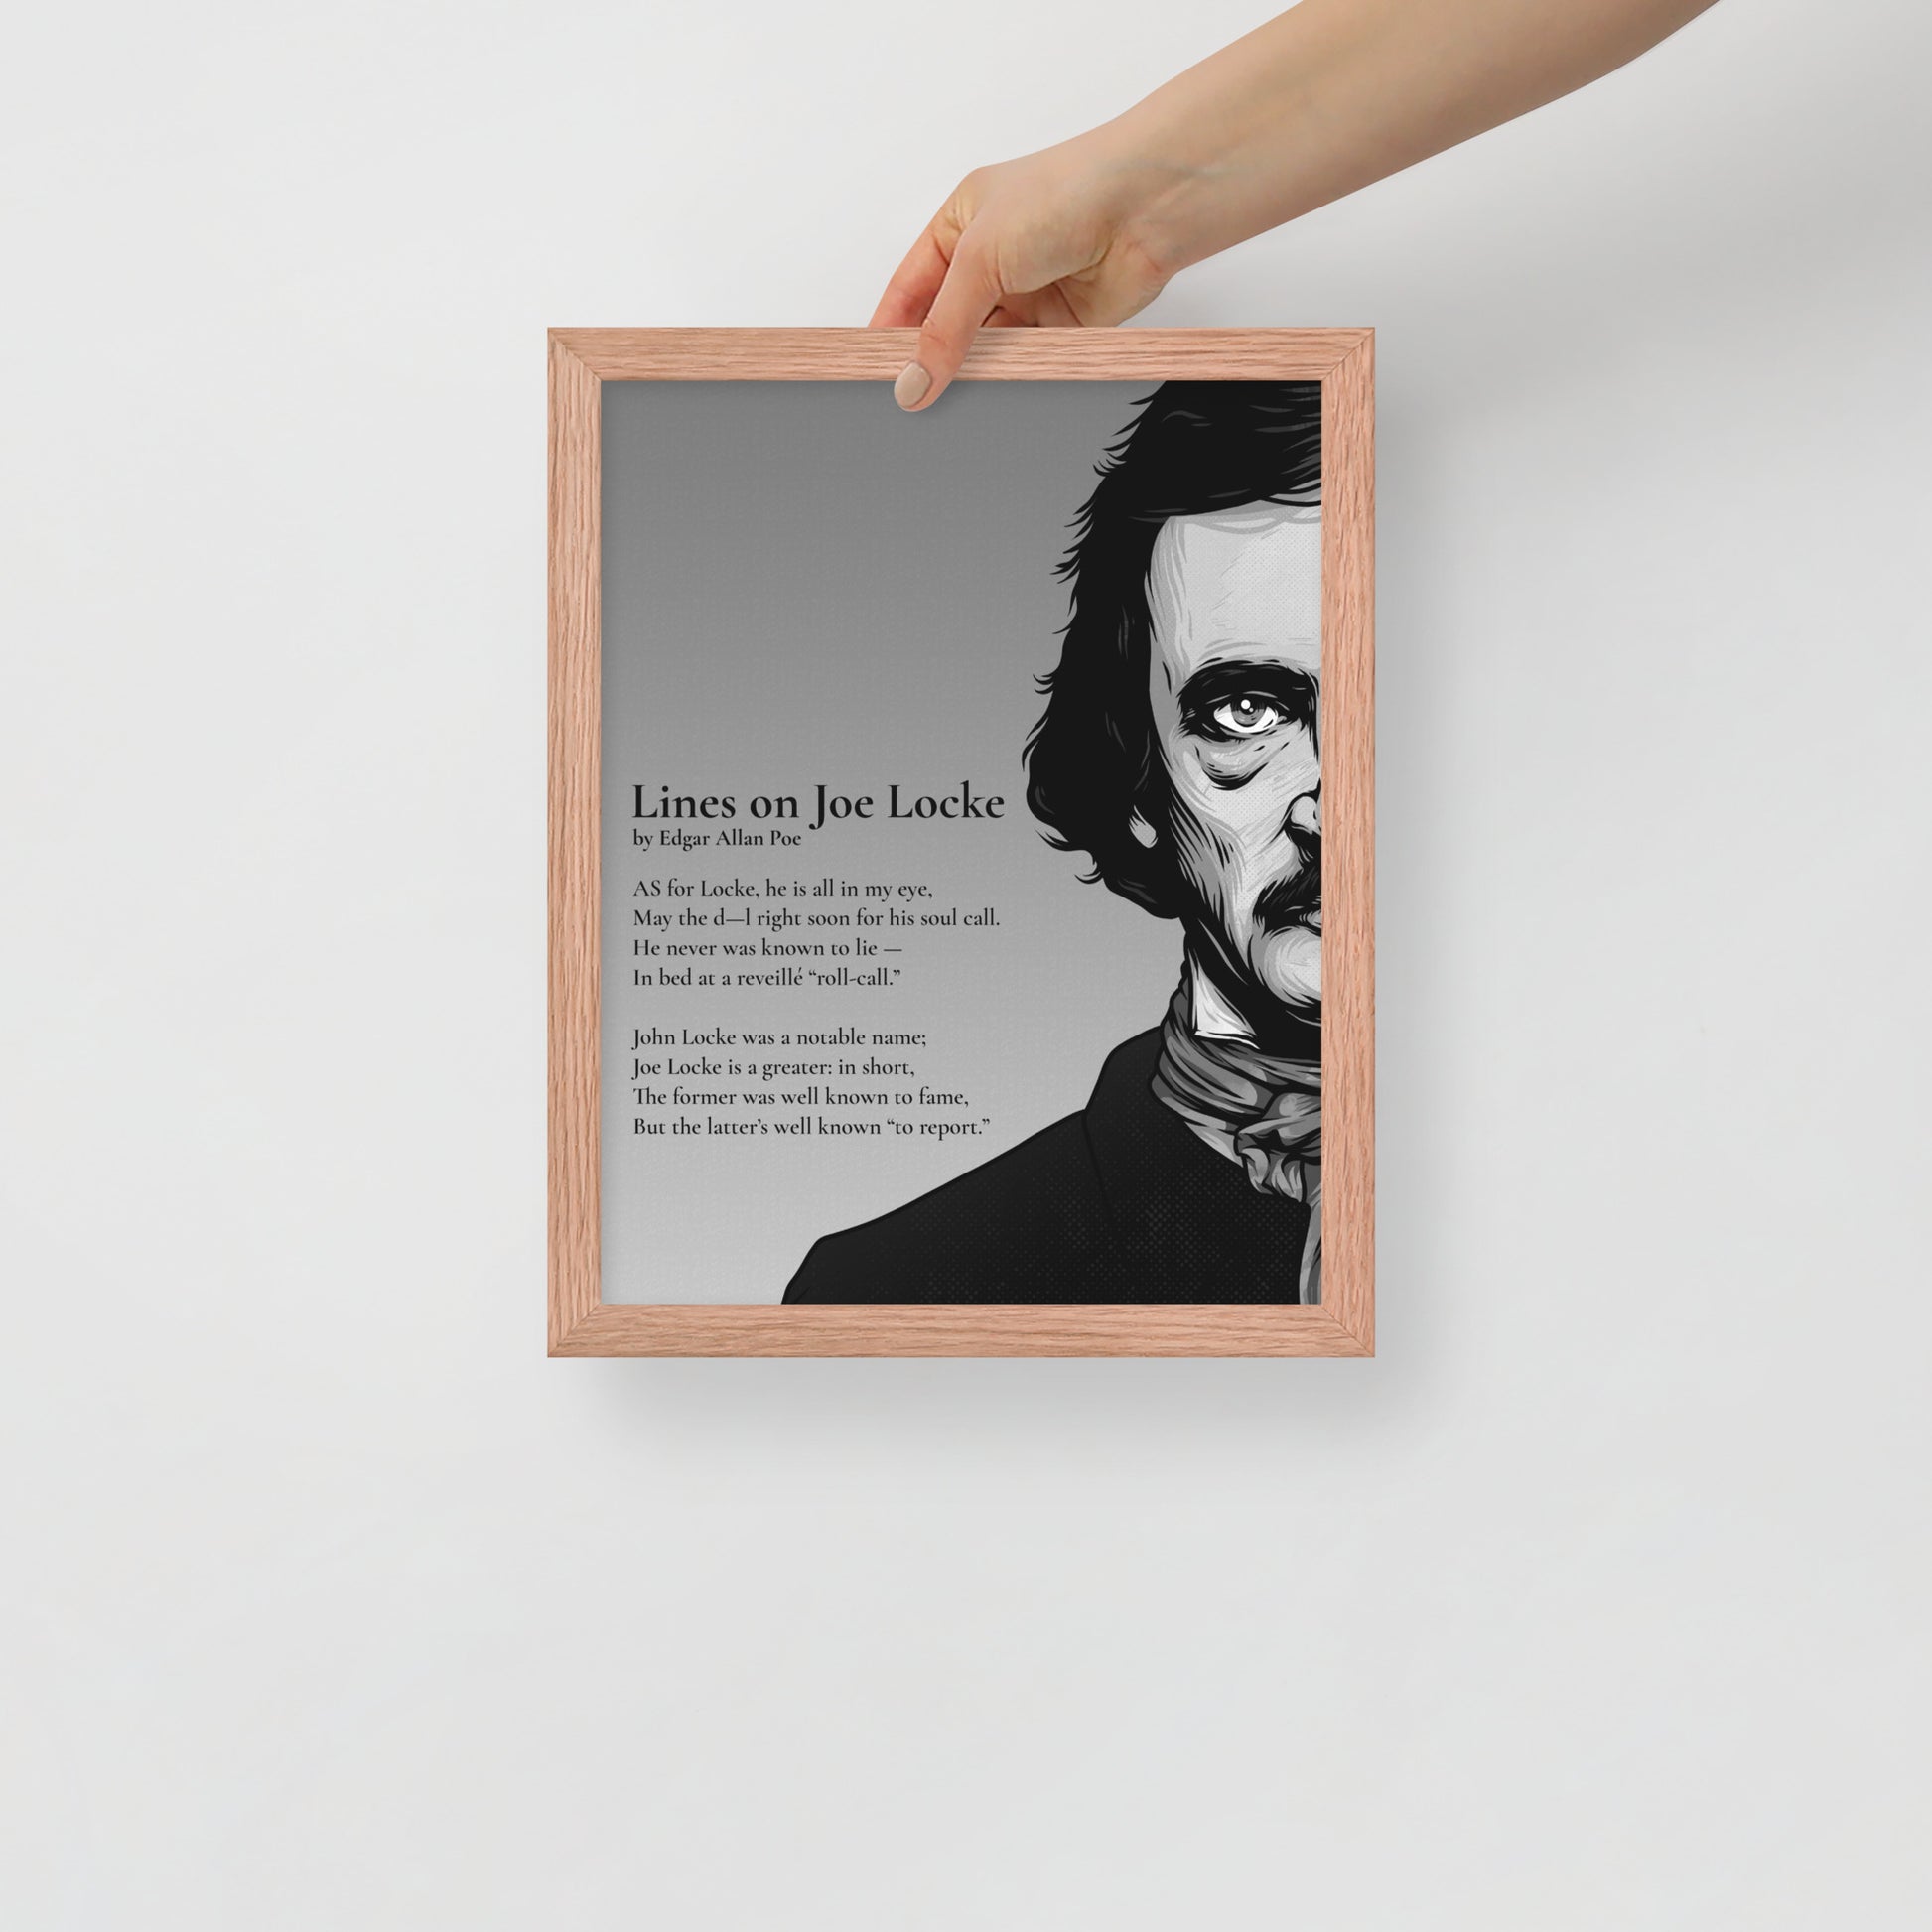 Edgar Allan Poe's 'Lines on Joe Locke' Framed Matted Poster - 11 x 14 Red Oak Frame